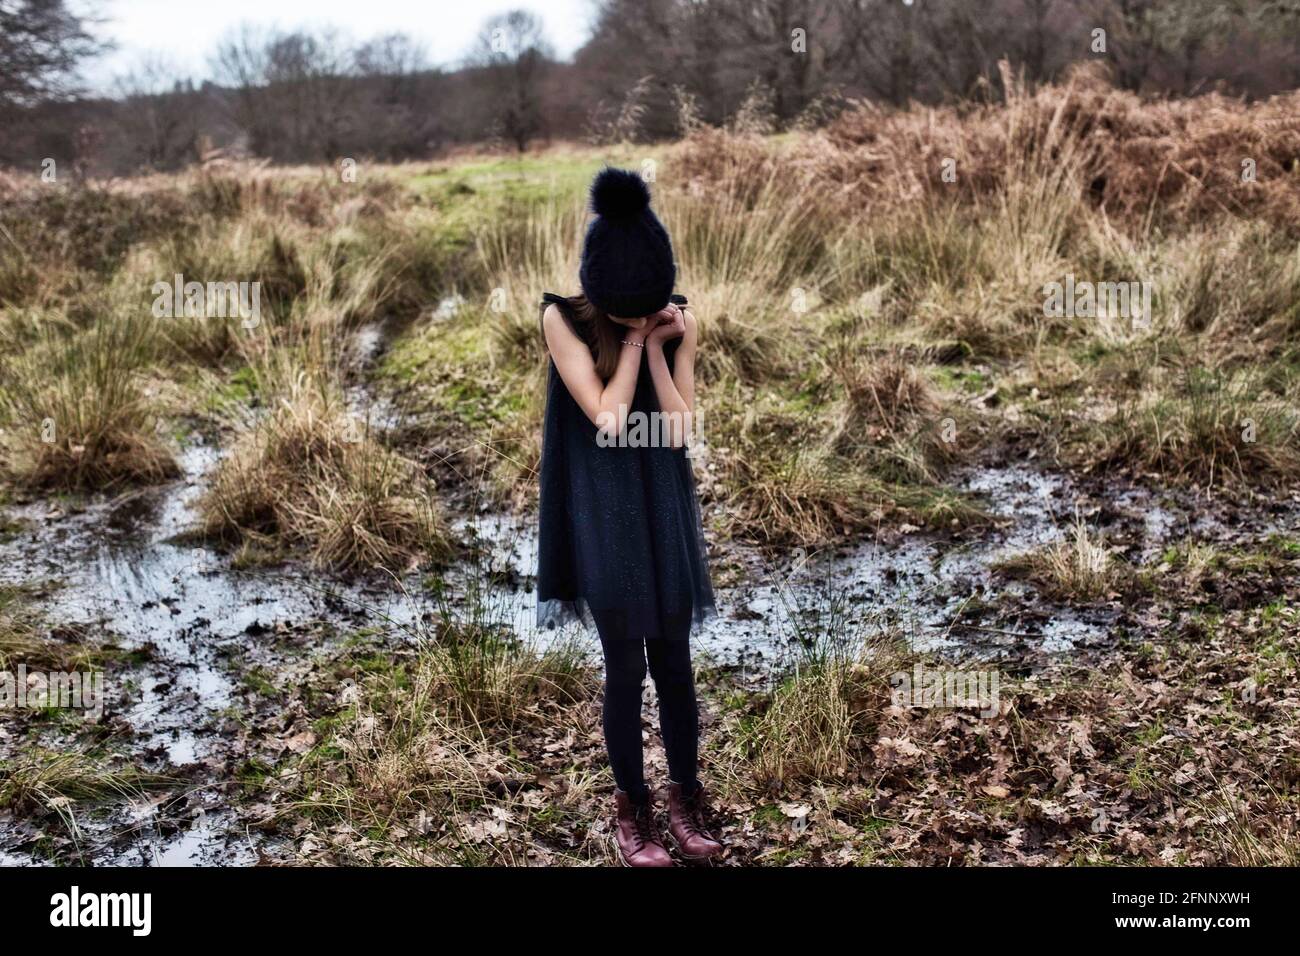 Ein kleines Mädchen, das in einer unheimlichen, gruseligen Landschaft steht. Mädchen, das auf einem Moor steht Stockfoto